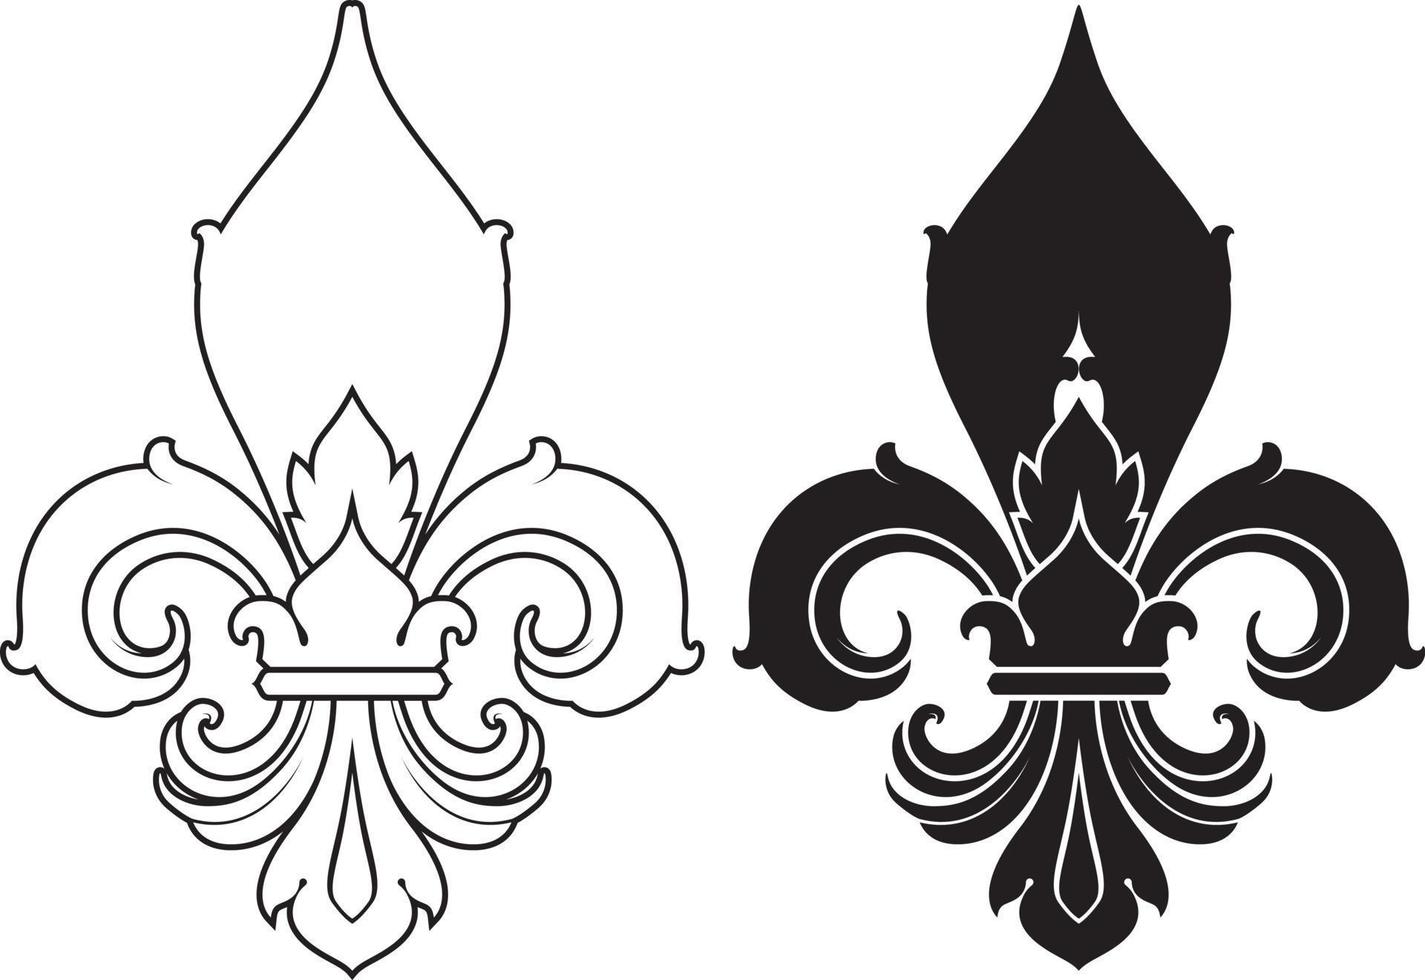 símbolo da flor de lis, silhueta - símbolo heráldico. ilustração vetorial. signo medieval. vetor